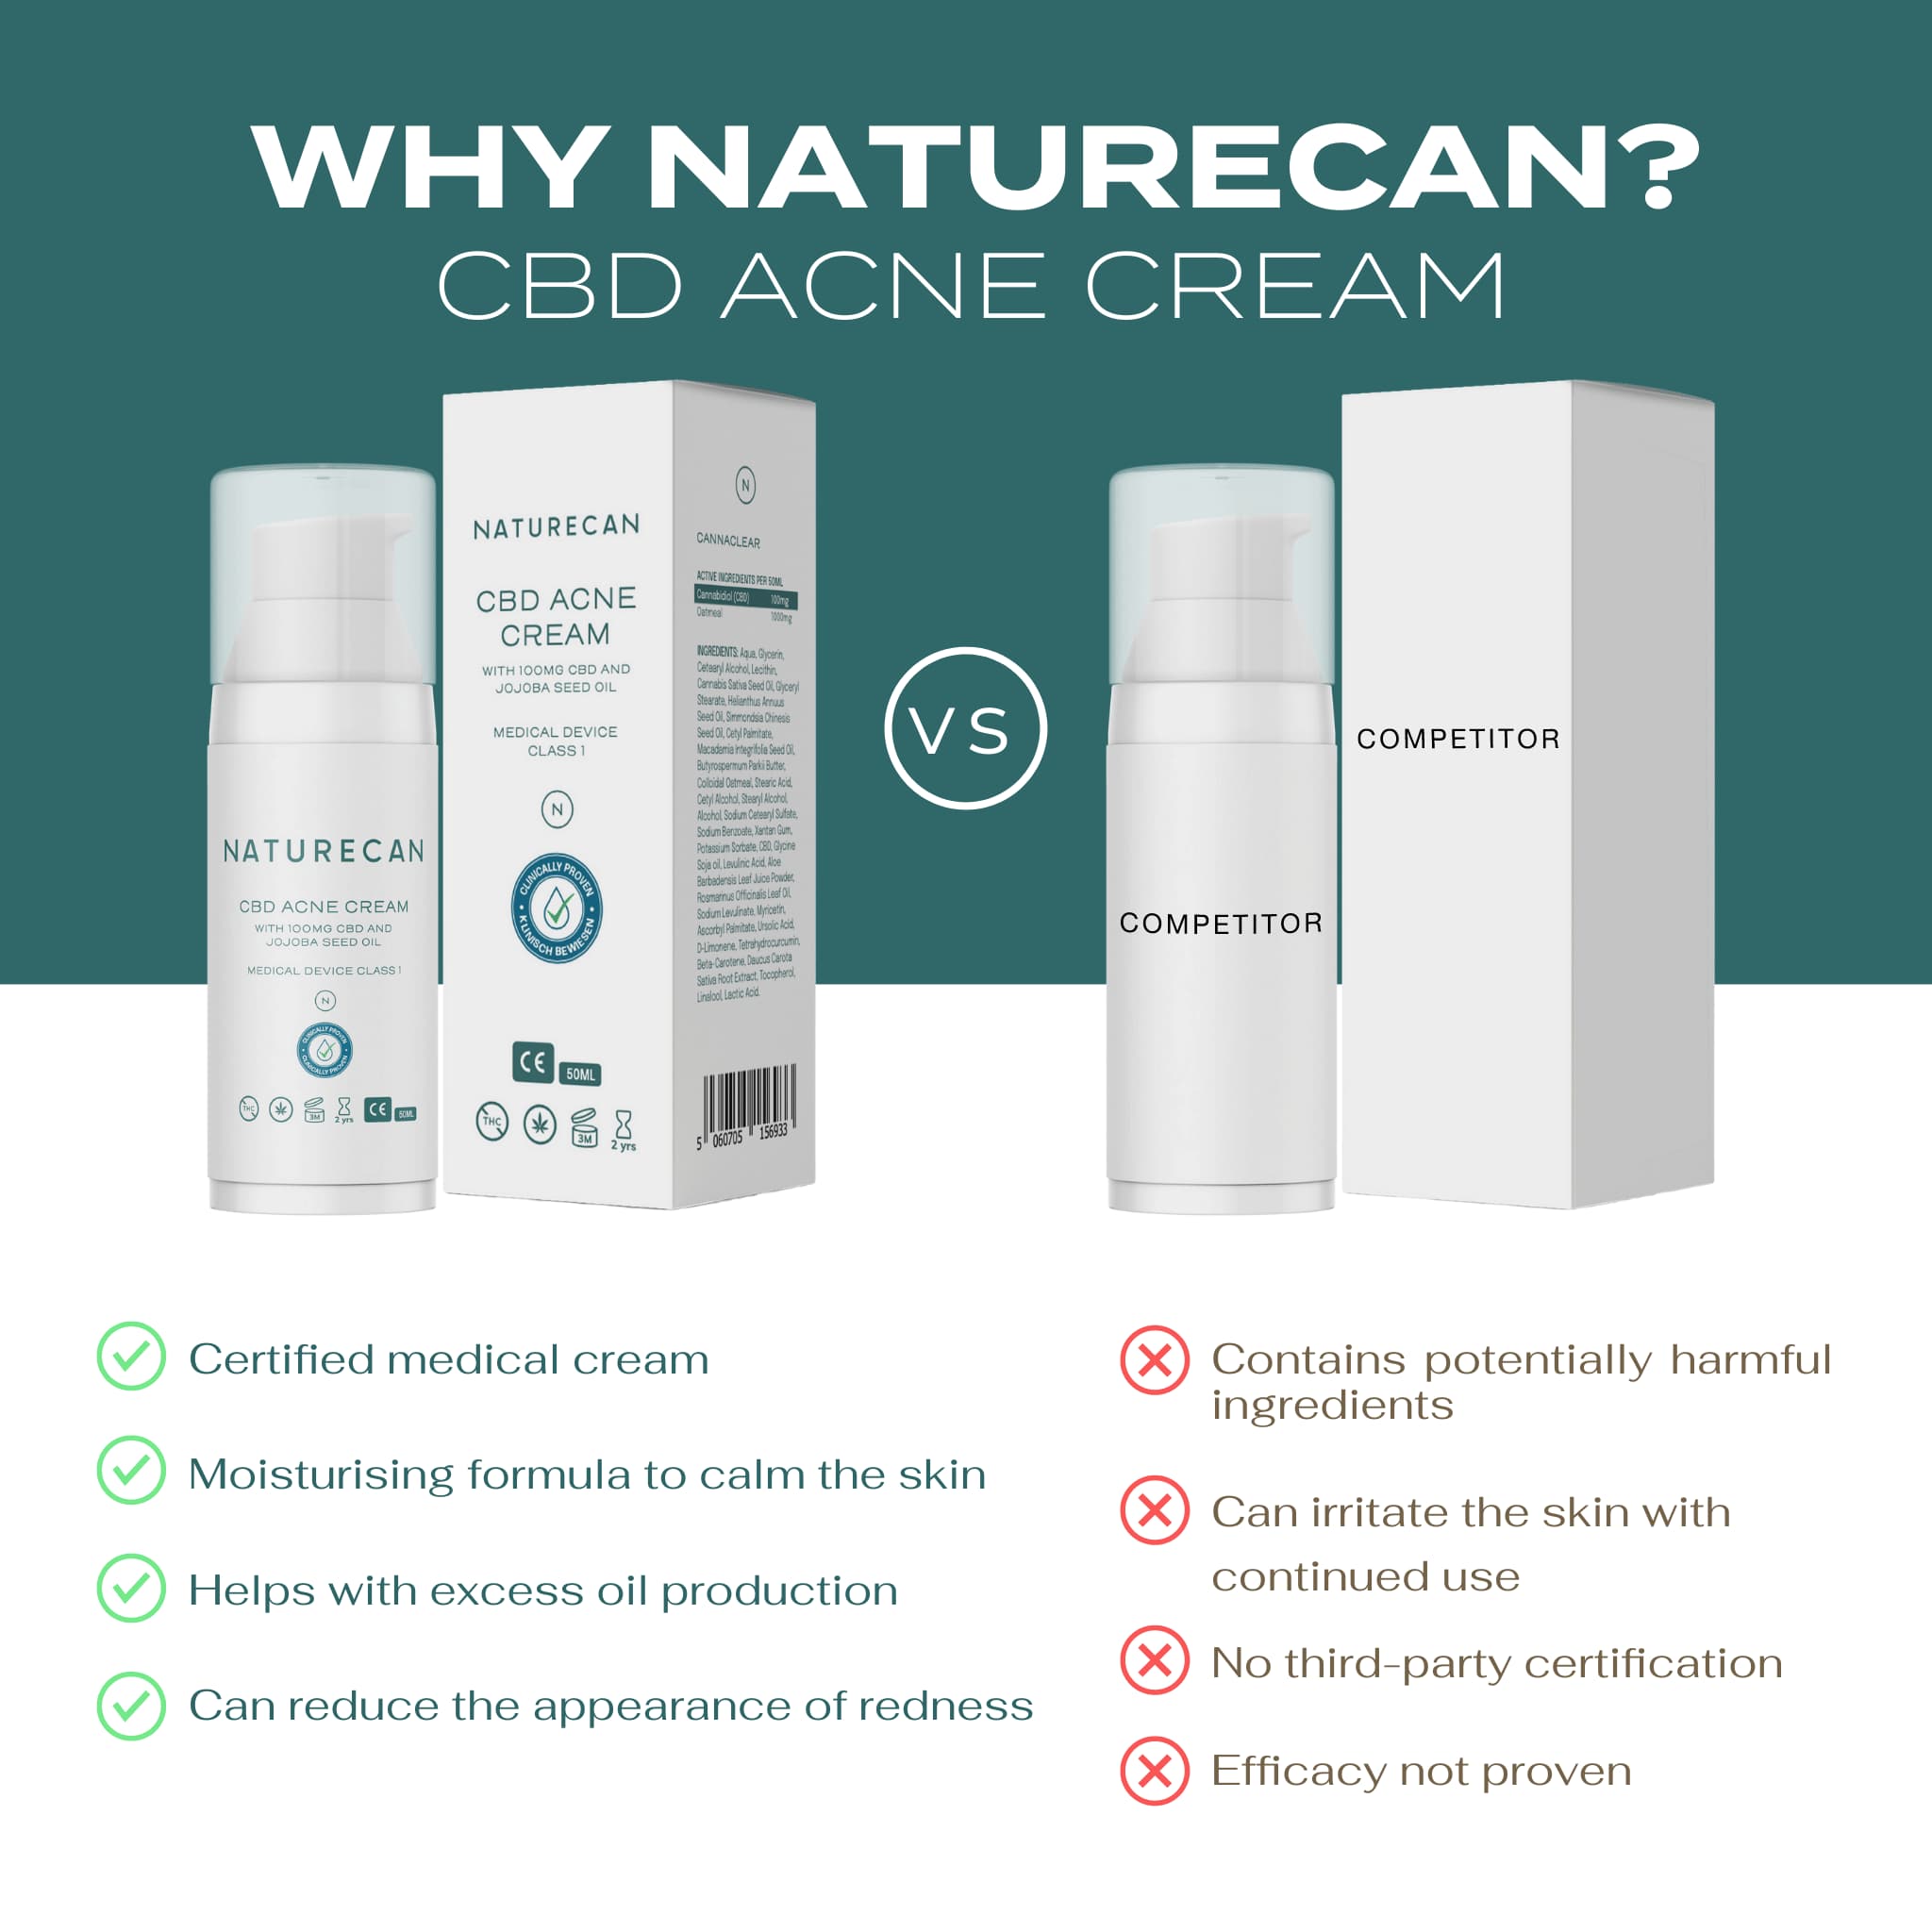 CBD Acne Cream vs competitors